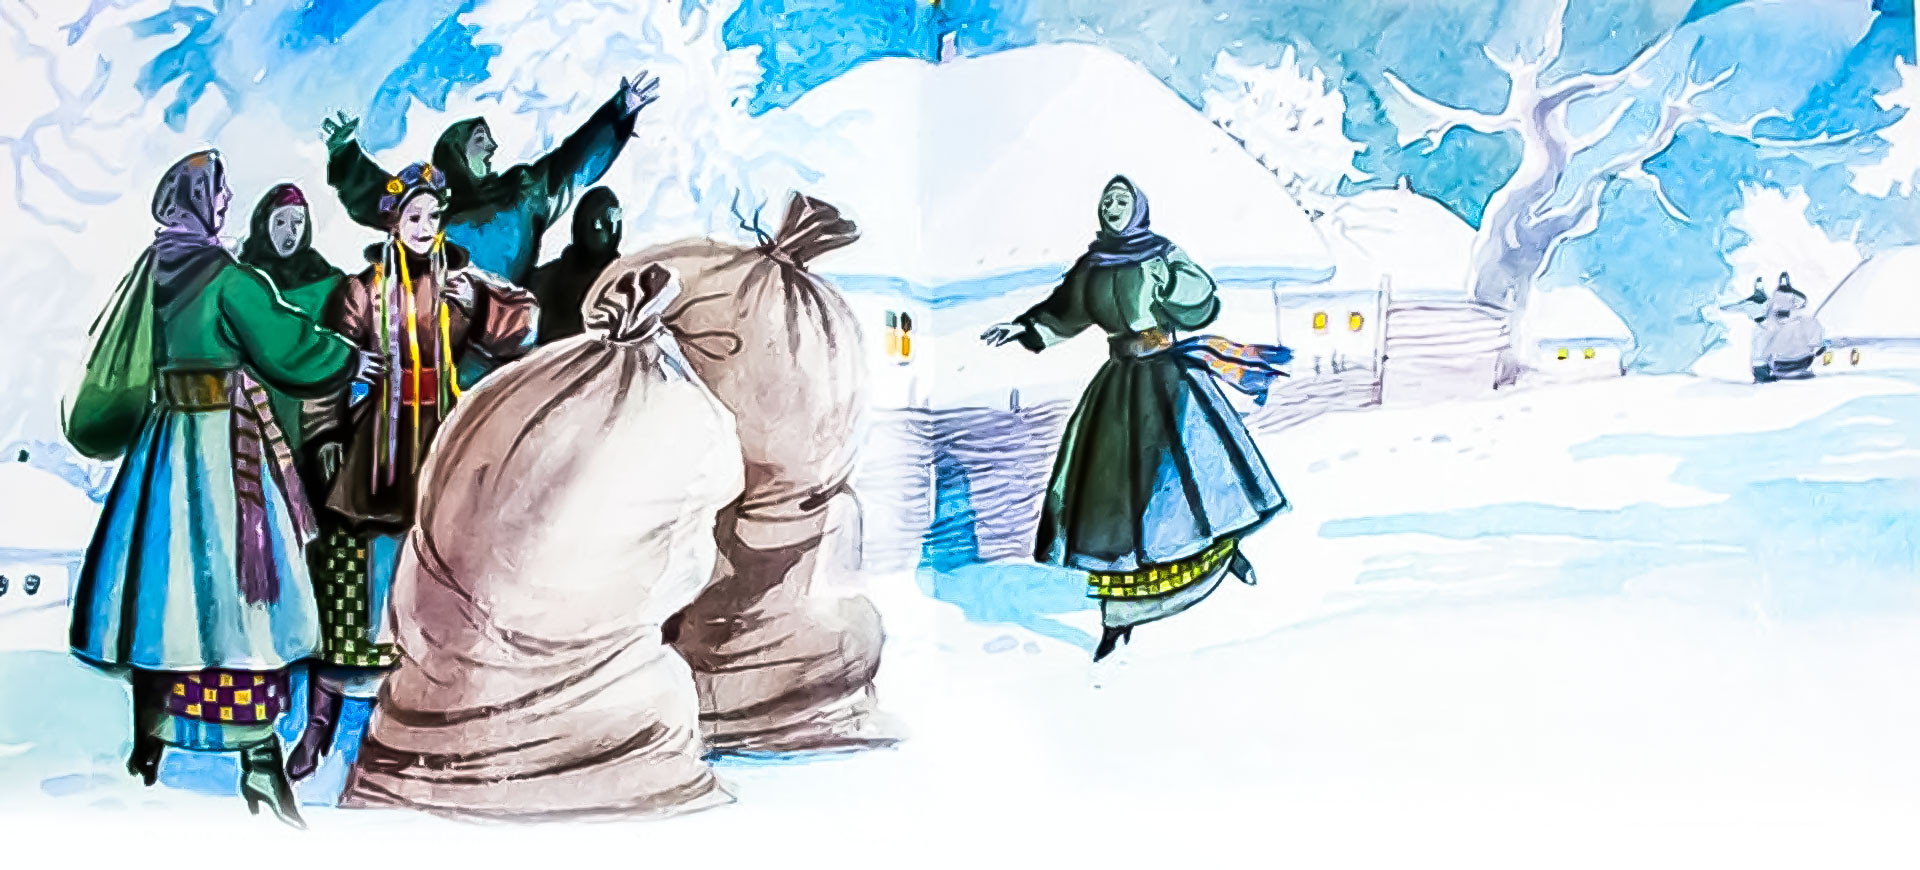 Ночь перед рождеством мешки. Иллюстрация к повести Гоголя ночь перед Рождеством. Ночь перед Рождеством Гоголь. Иллюстрации к ночь перед Рождеством Гоголя 5 класс. Гоголь ночь перед Рождеством иллюстрации с черевичками.